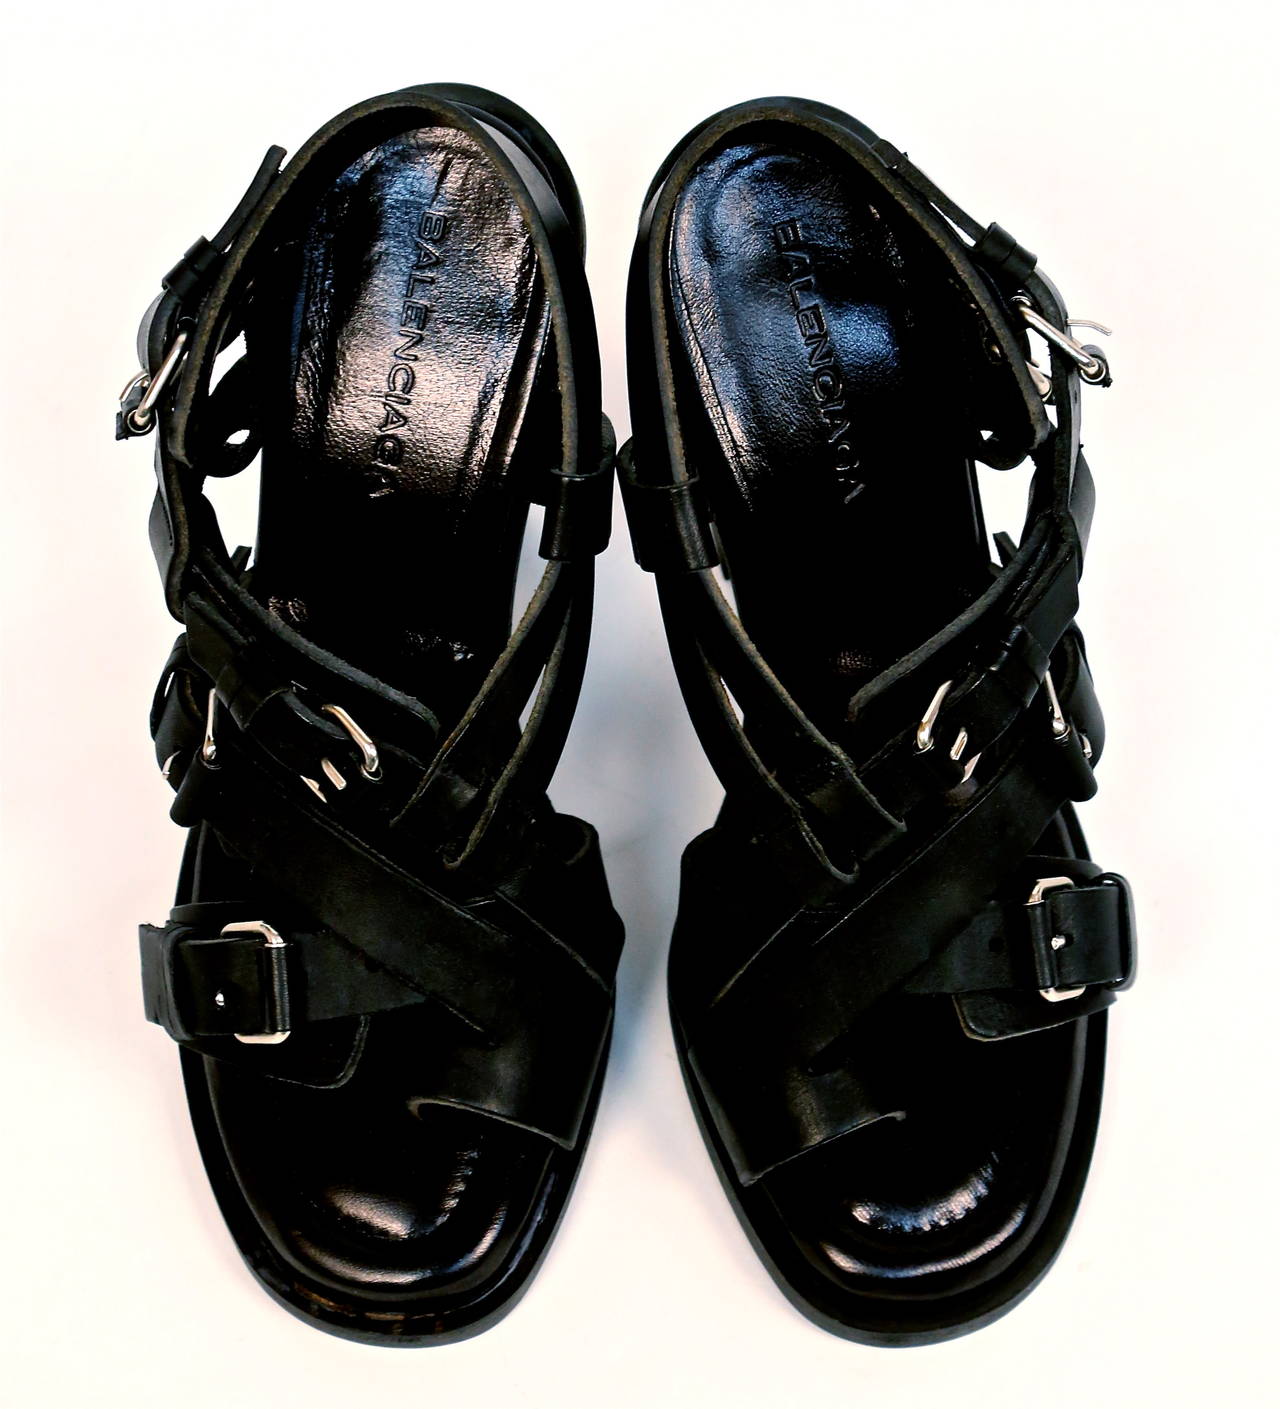 Black 2003 Nicolas Ghesquière for Balenciaga black leather sandals 38 unworn